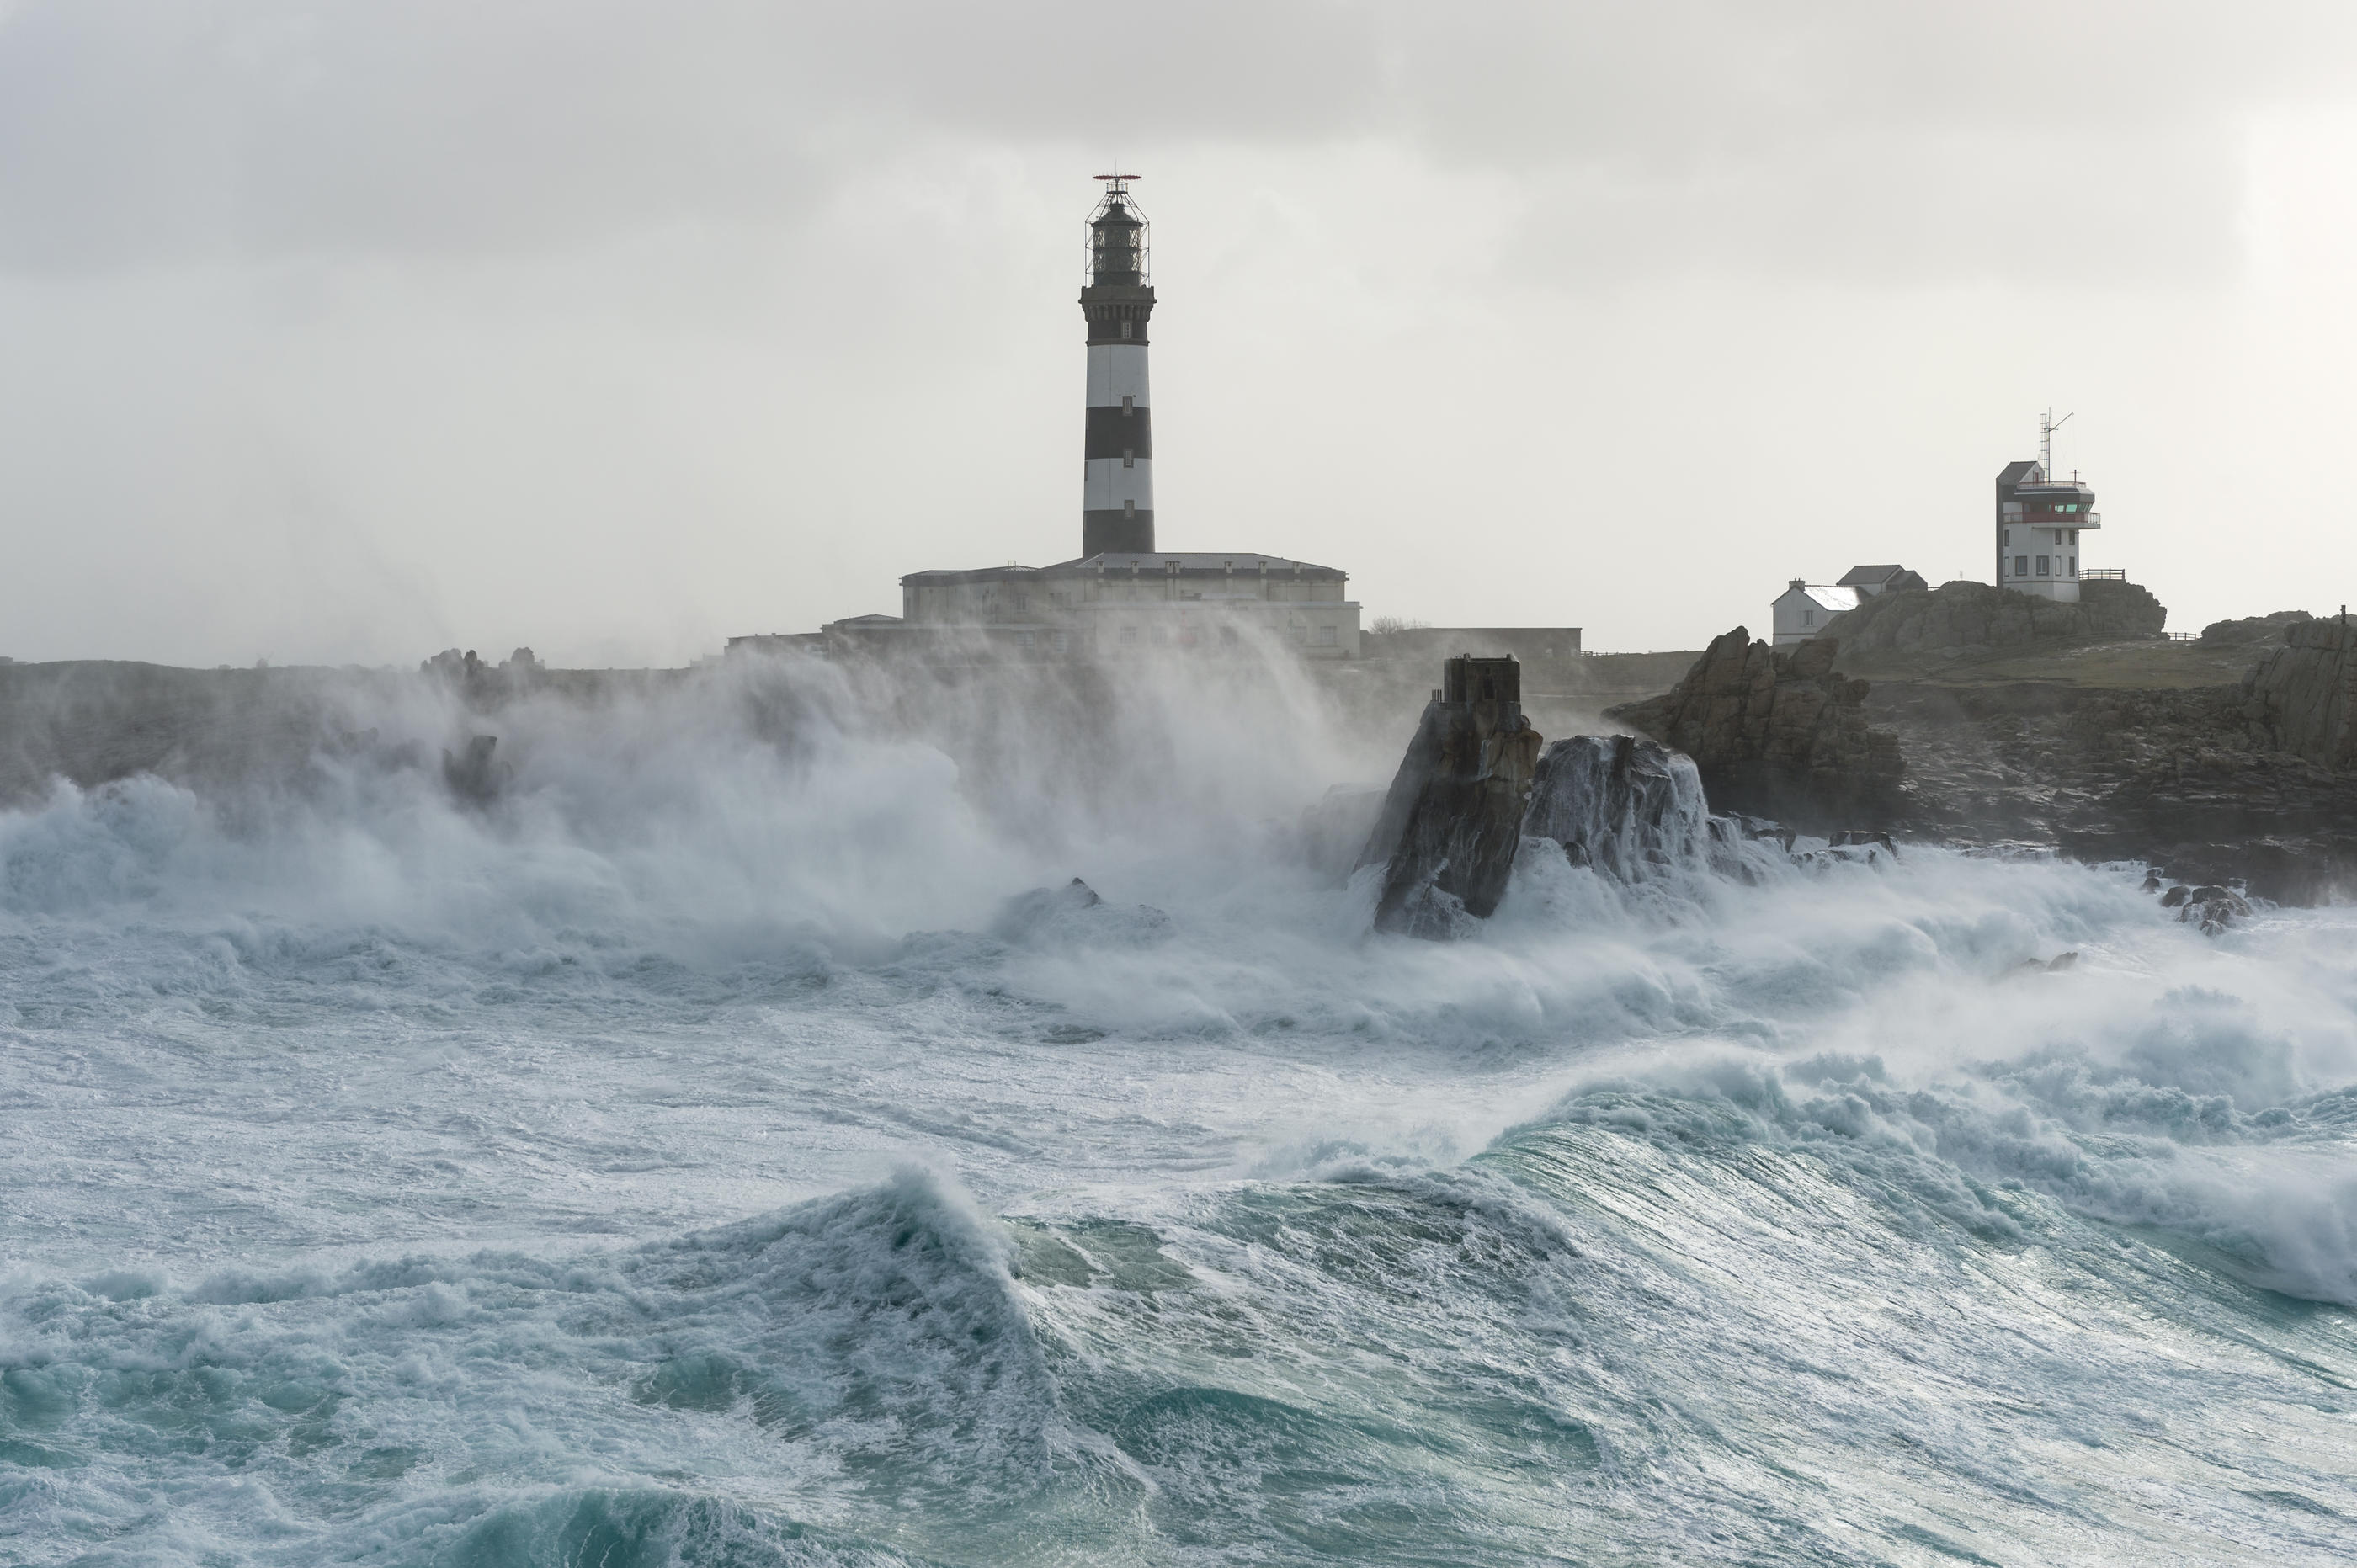 Violente tempête Ciaran sur la Bretagne - Actualités météo - Météo Bretagne